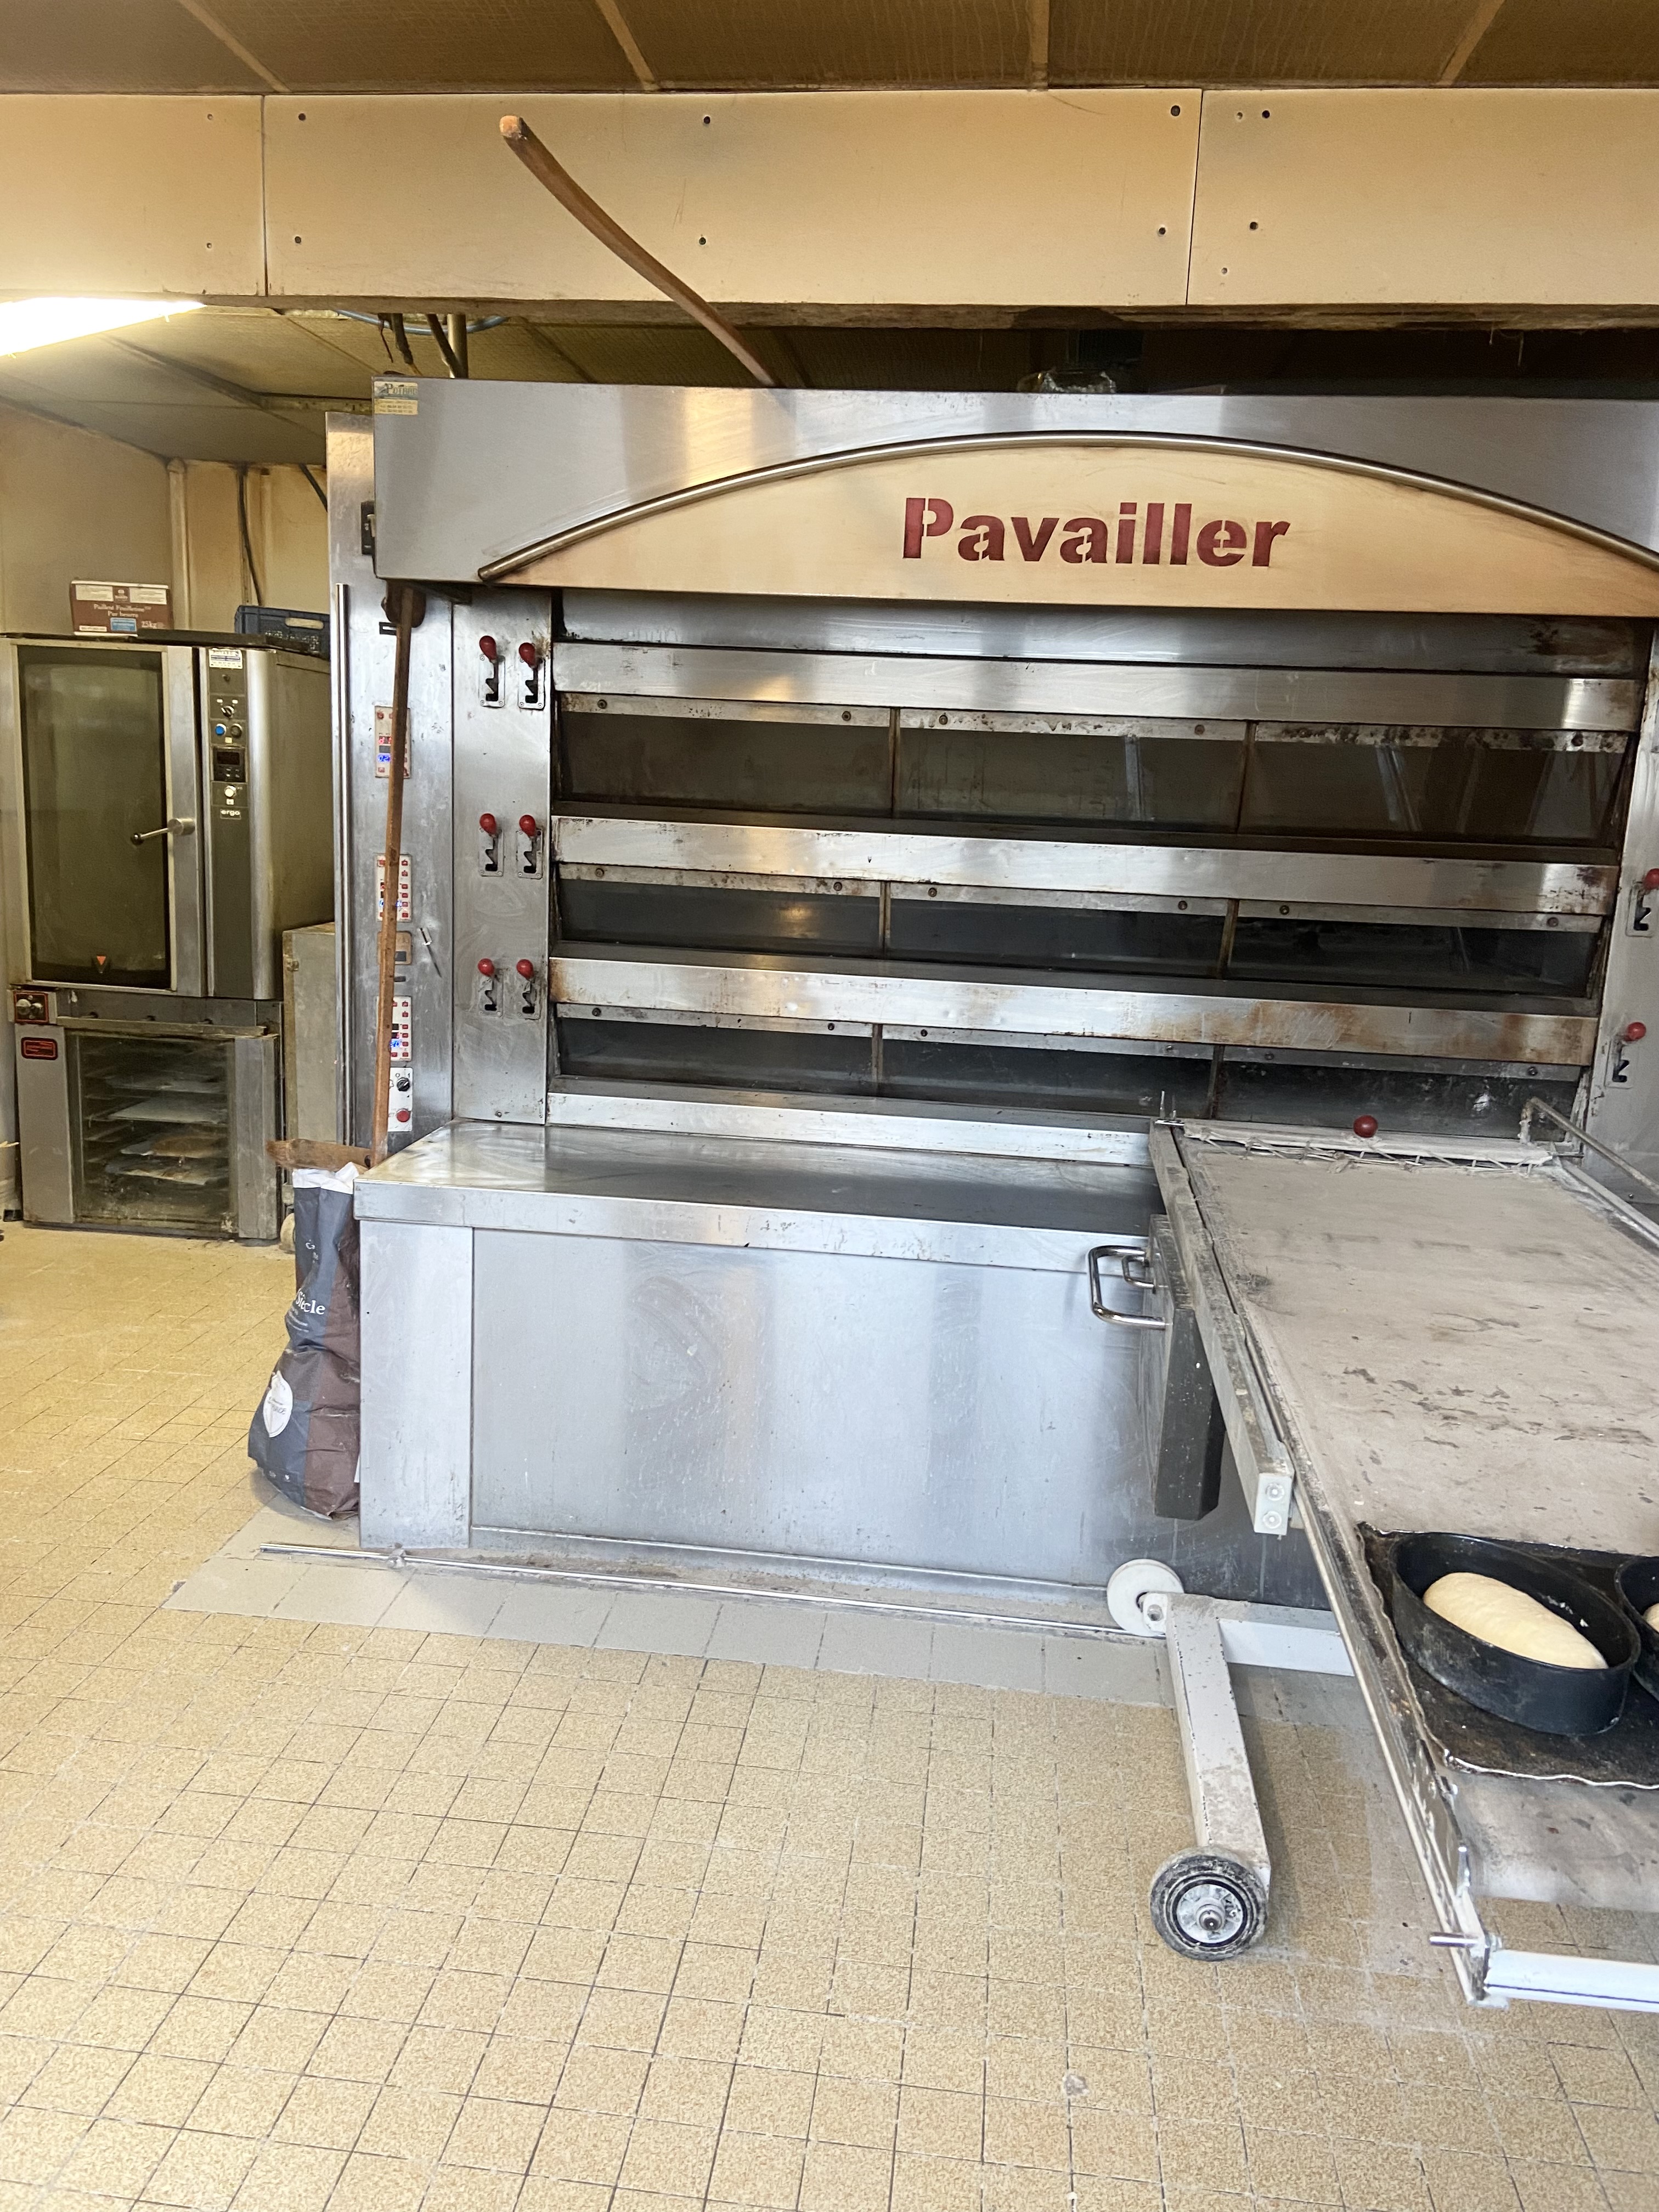 Changer de vie en bord de mer ?
Cause  départ en retraite, cette boulangerie pâtisserie située à Plouescat (Finistère, Bretagne) n’attend qu’un repreneur !
Affaire saine à forte notoriété locale ; très bon chiffre d’affaire,  rentabilité supérieure à la moyenne professionnelle ;  importance du rayon  pâtisserie (40% du CA).
Effectif de 5 salariés ETP (1 boulanger, 2 pâtissiers, 2 vendeuses) + 3 apprentis+ les 2 exploitants.
100m2 de surface de vente et 220m2 de production.
Hyper centre, places de stationnement.
Soucieux de transmettre, nous tenons à cœur de donner sa chance à un(e) nouveau(elle) passionné(e), pourquoi pas vous ?
Prix de vente du fonds : 150000€ y compris le stock. Loyer mensuel : 1500€. Possibilité éventuelle  d’un accompagnement du repreneur par le client .
Cette station balnéaire vous offrira un cadre de vie agréable, dont vous pourrez profiter avec une fermeture hebdomadaire et 6 semaines de congés annuels.